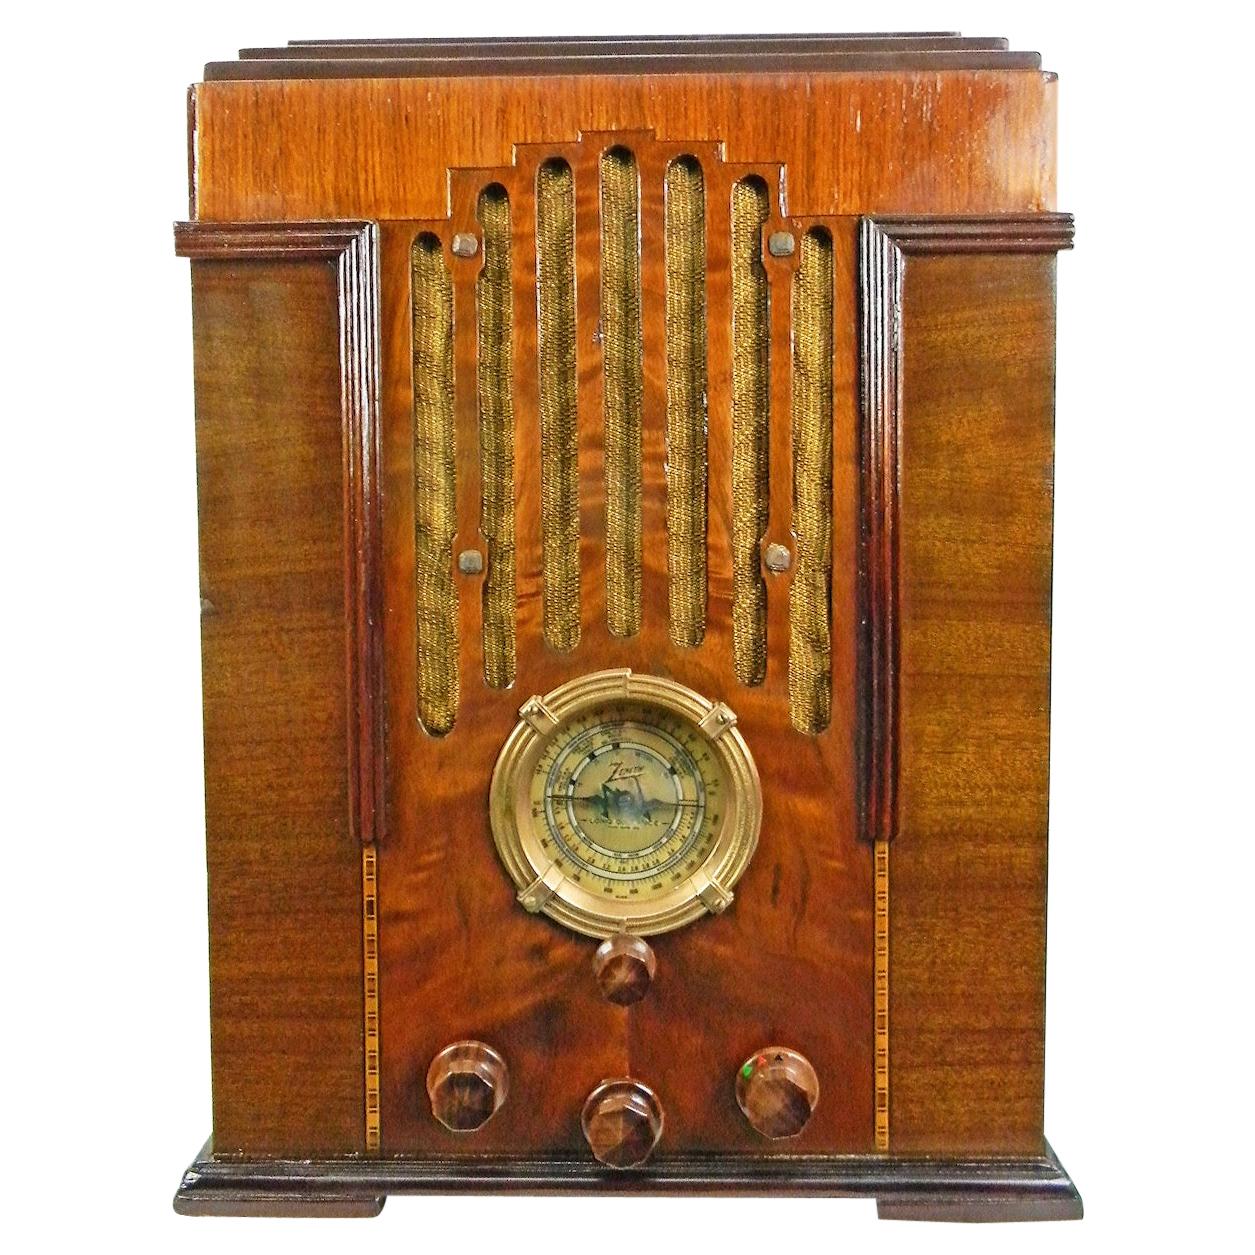 Art Deco Radio - 47 For Sale on 1stDibs | art deco radios, art 